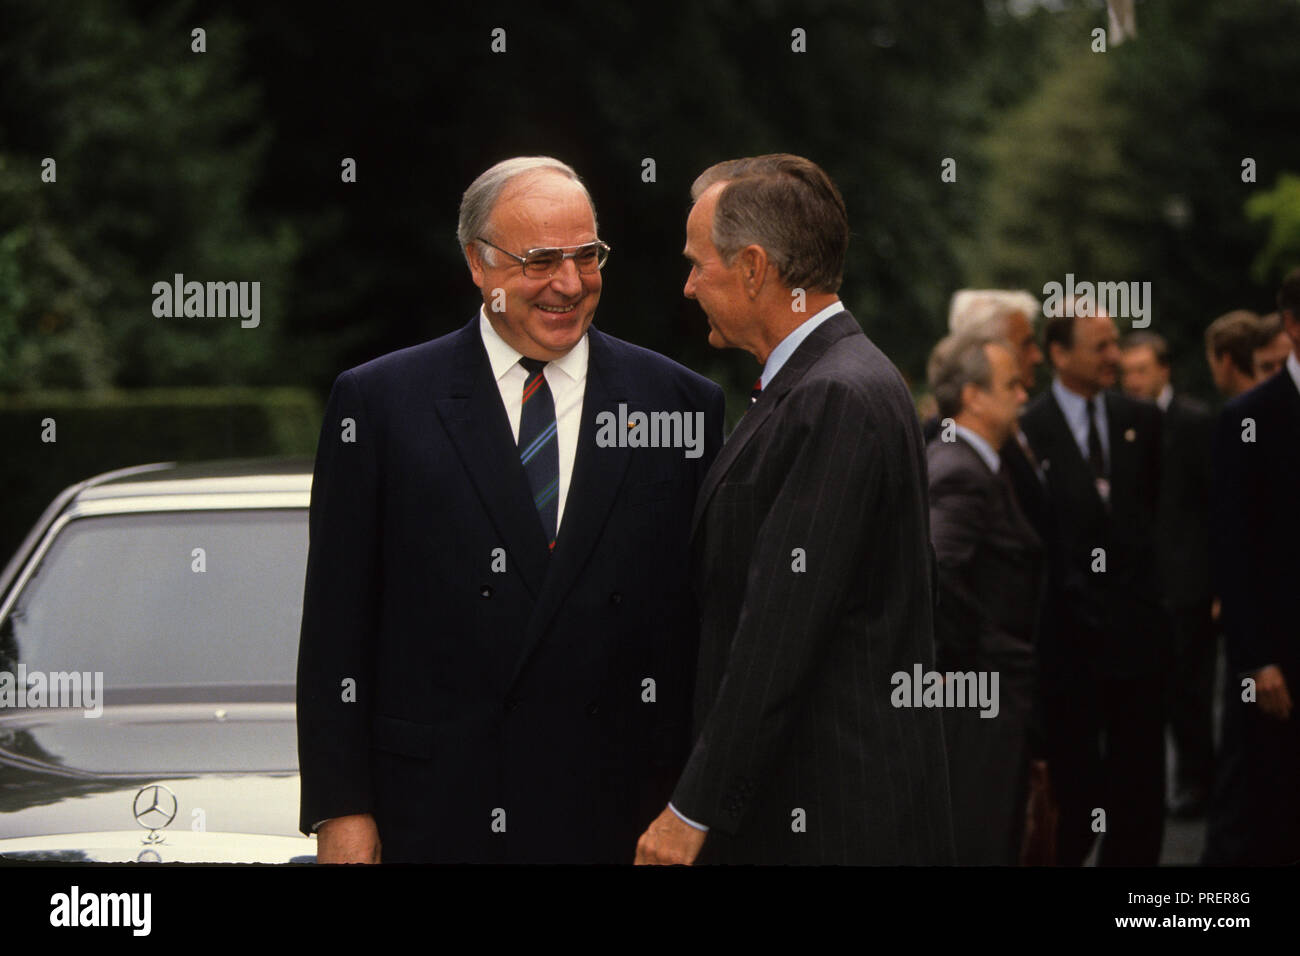 Presidente H.W. Bush (Bush 41) conversa con el canciller alemán Helmut Kohl en la Cumbre Económica en Gran Bretaña en 1991. Fotografía por Dennis Brack bb24 Foto de stock